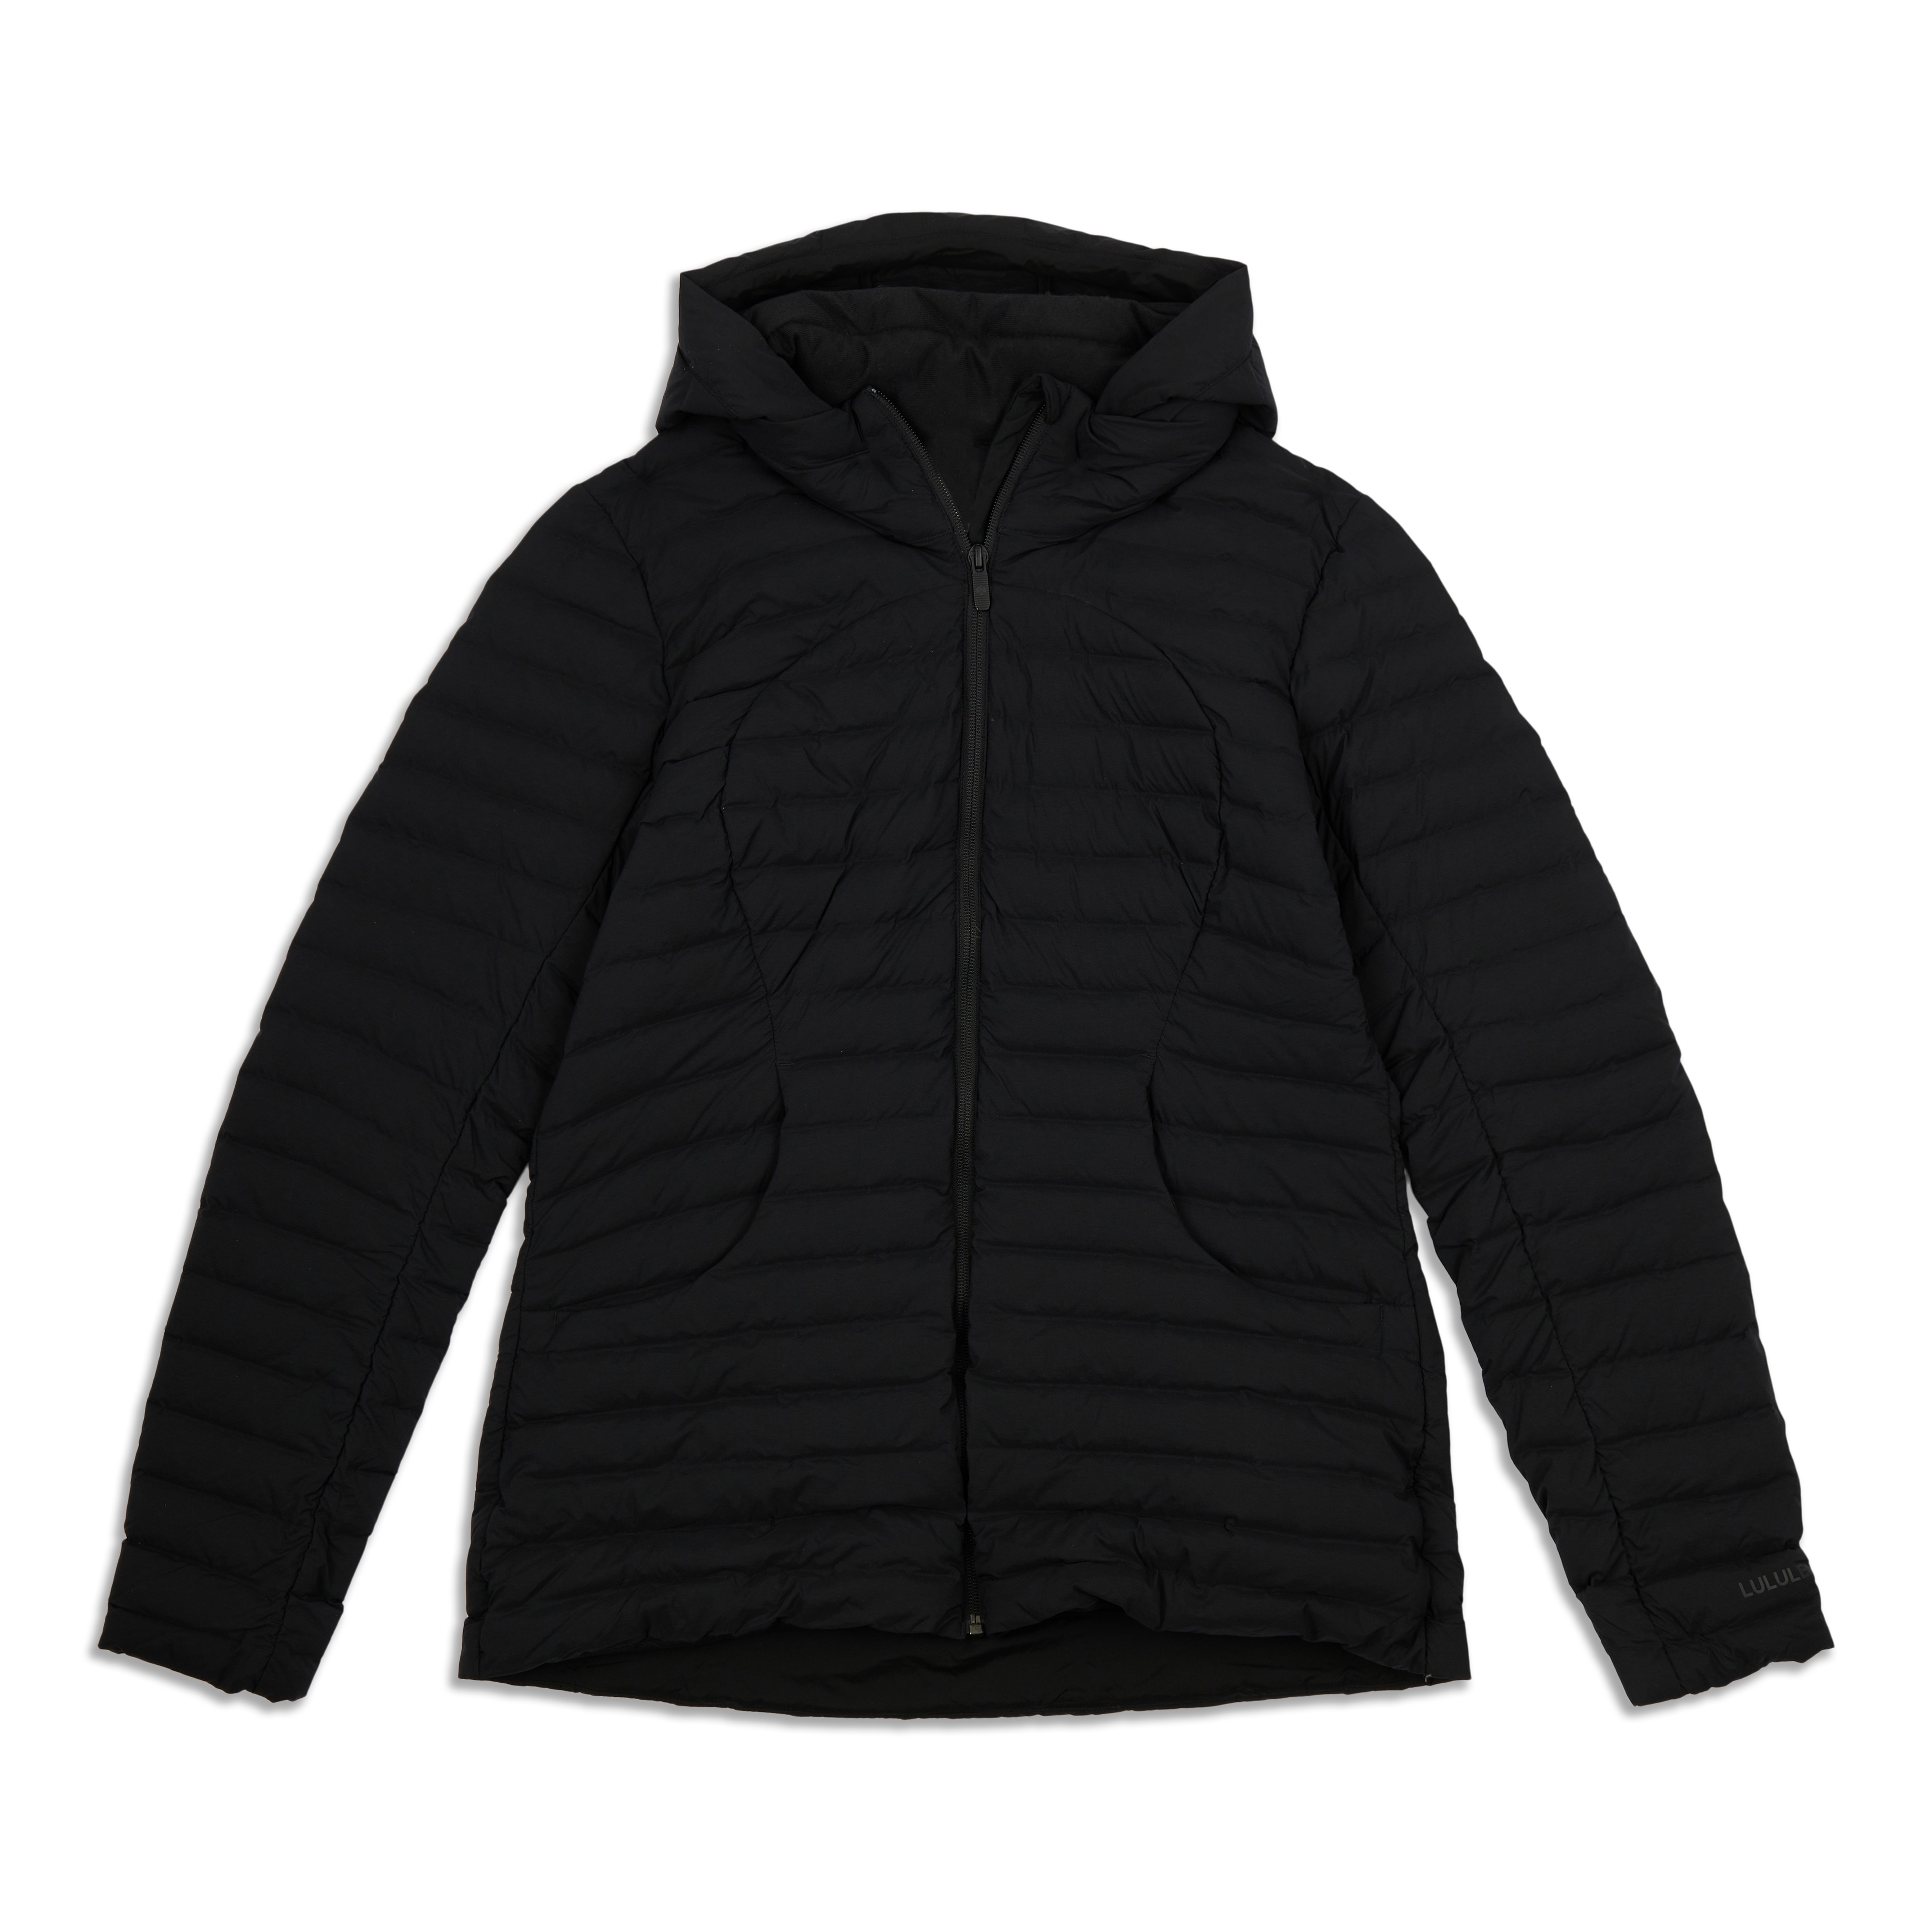 NWT Lululemon Down For It All Jacket size 2 Black (Older version) - LW4BK0S  BLK